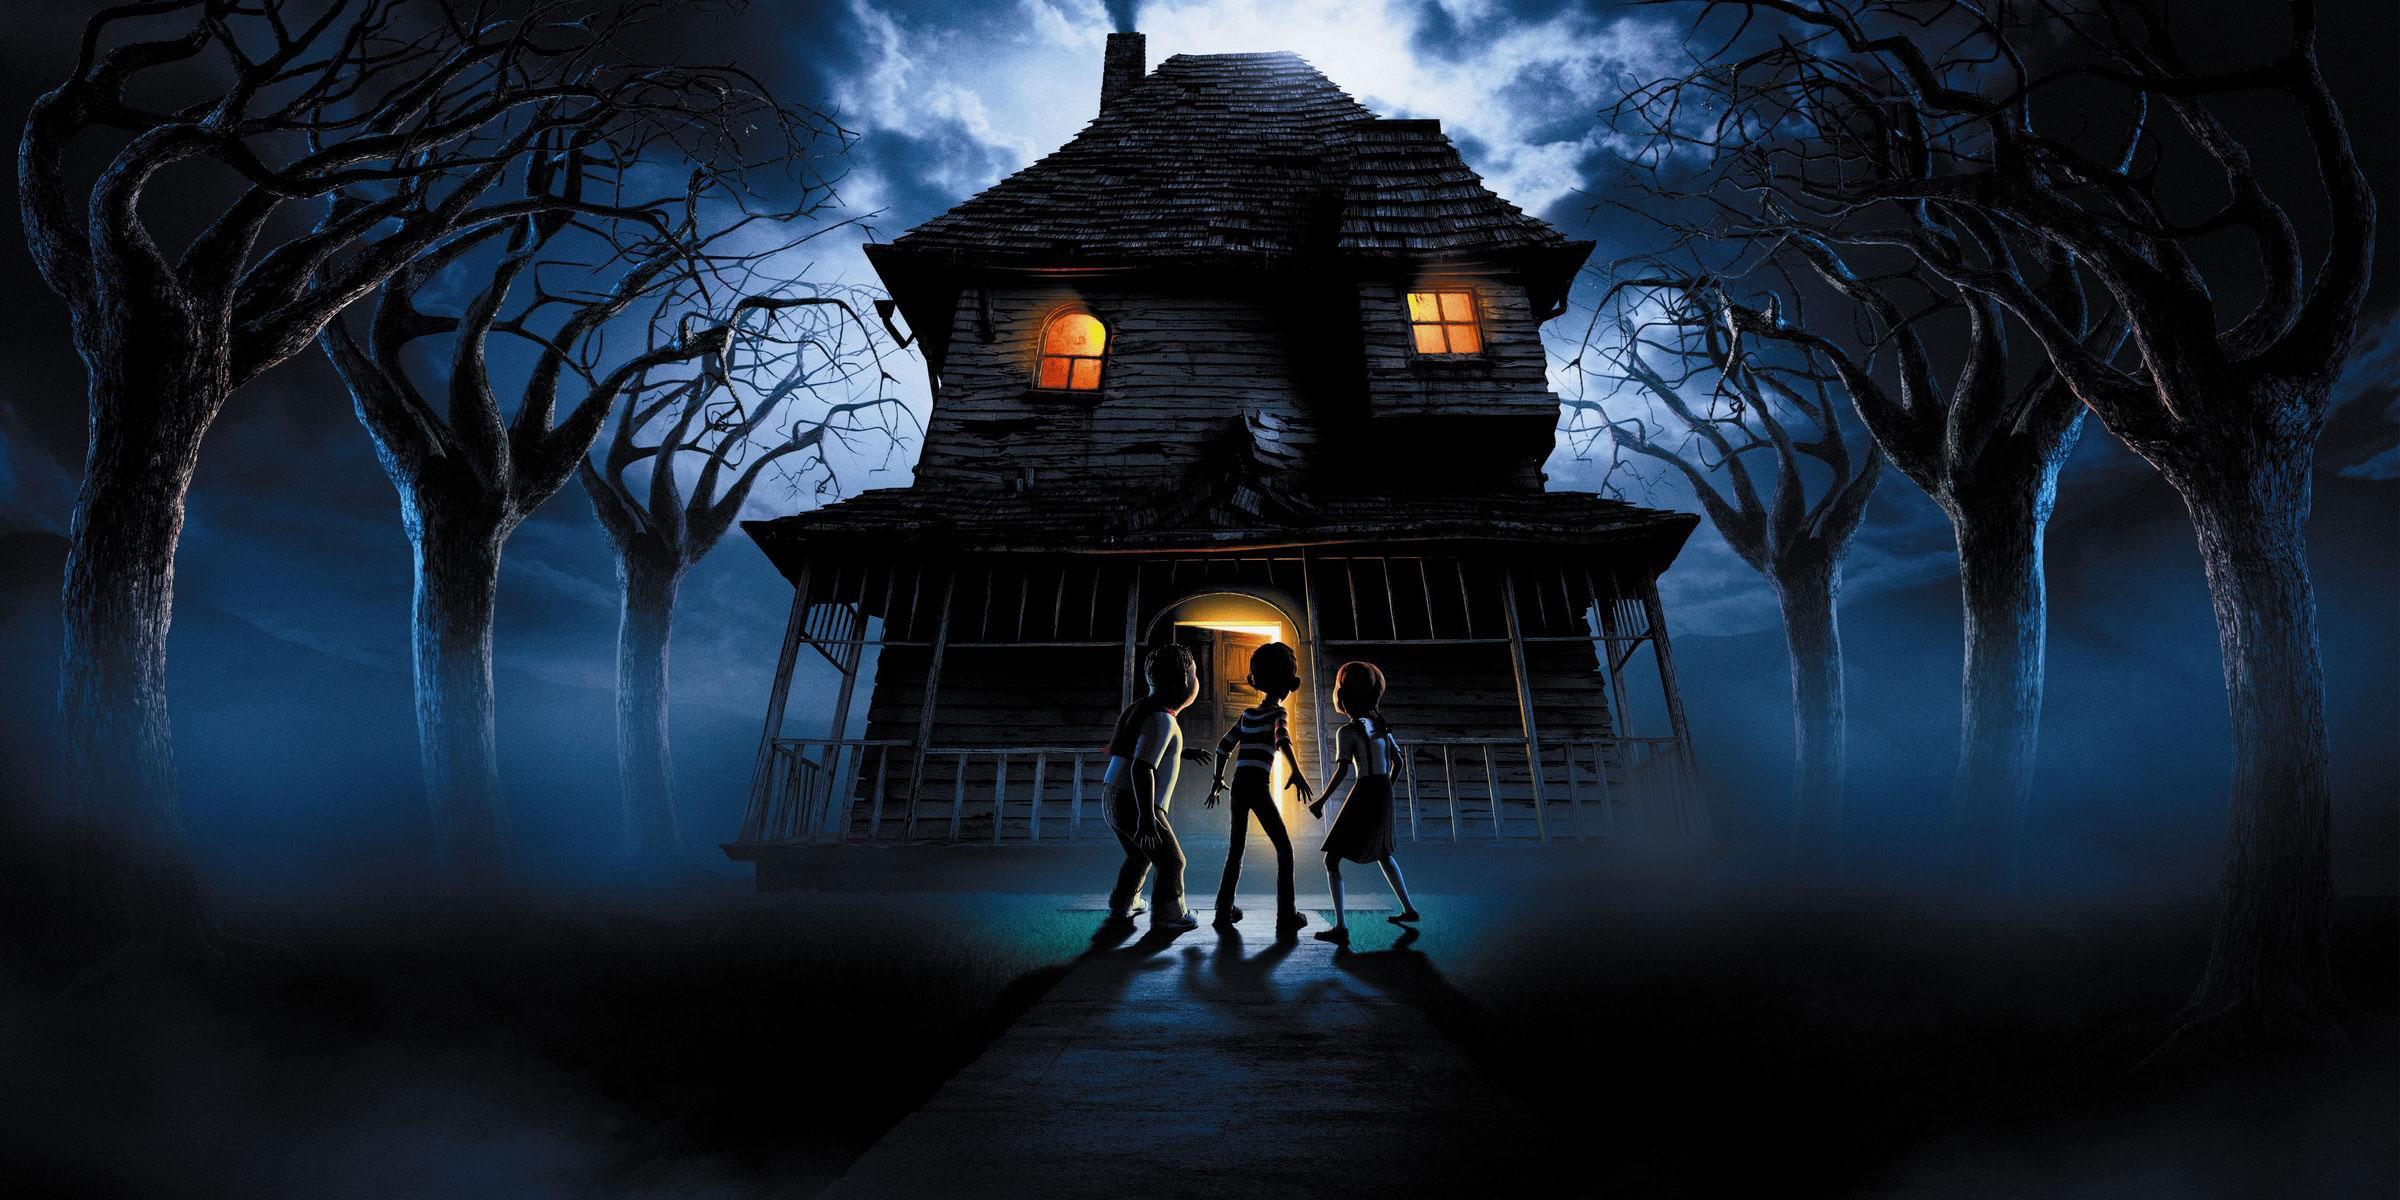 Постер фильма Дом - монстр | Monster House